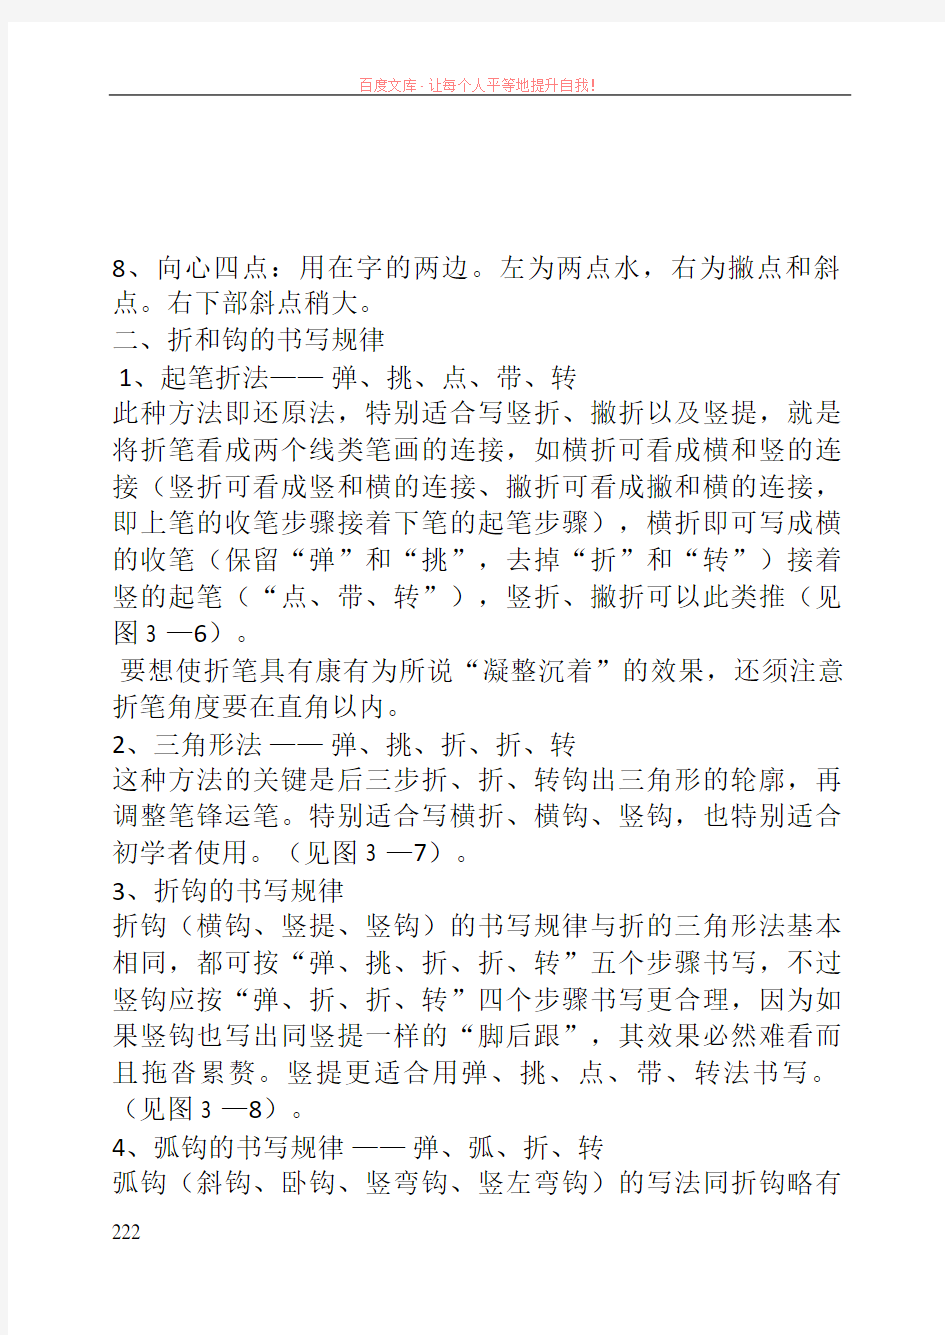 (已打印)汉字书法笔画书写八大规律20190416